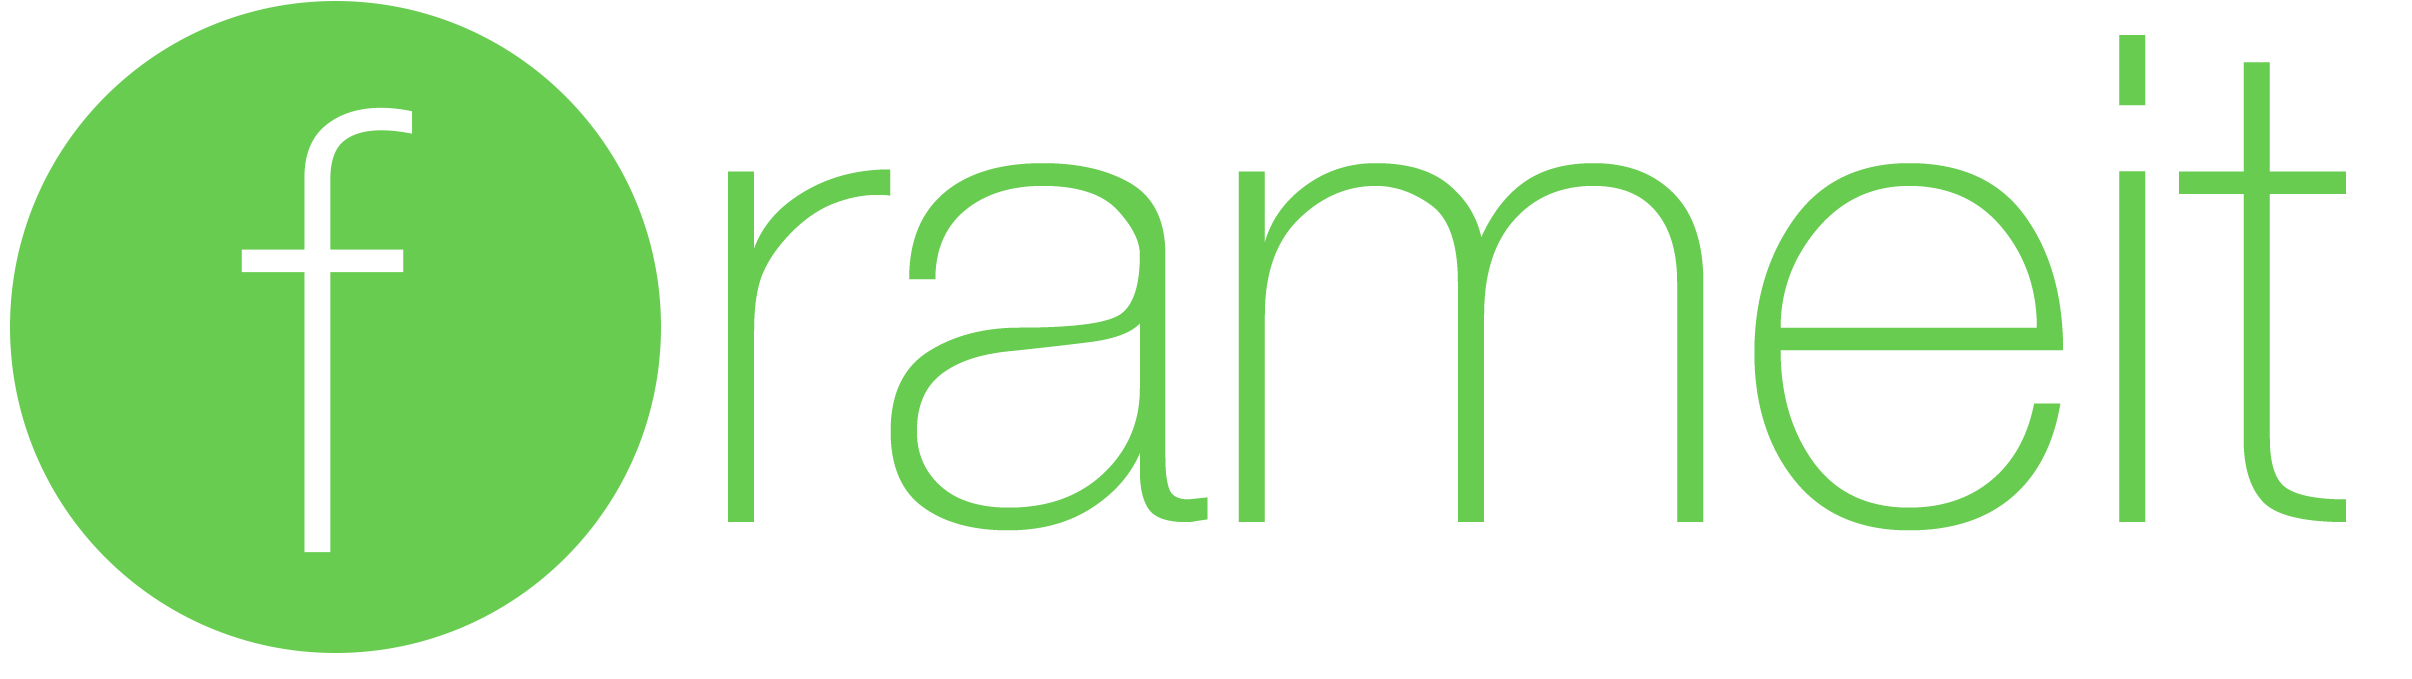 Frameit Logo